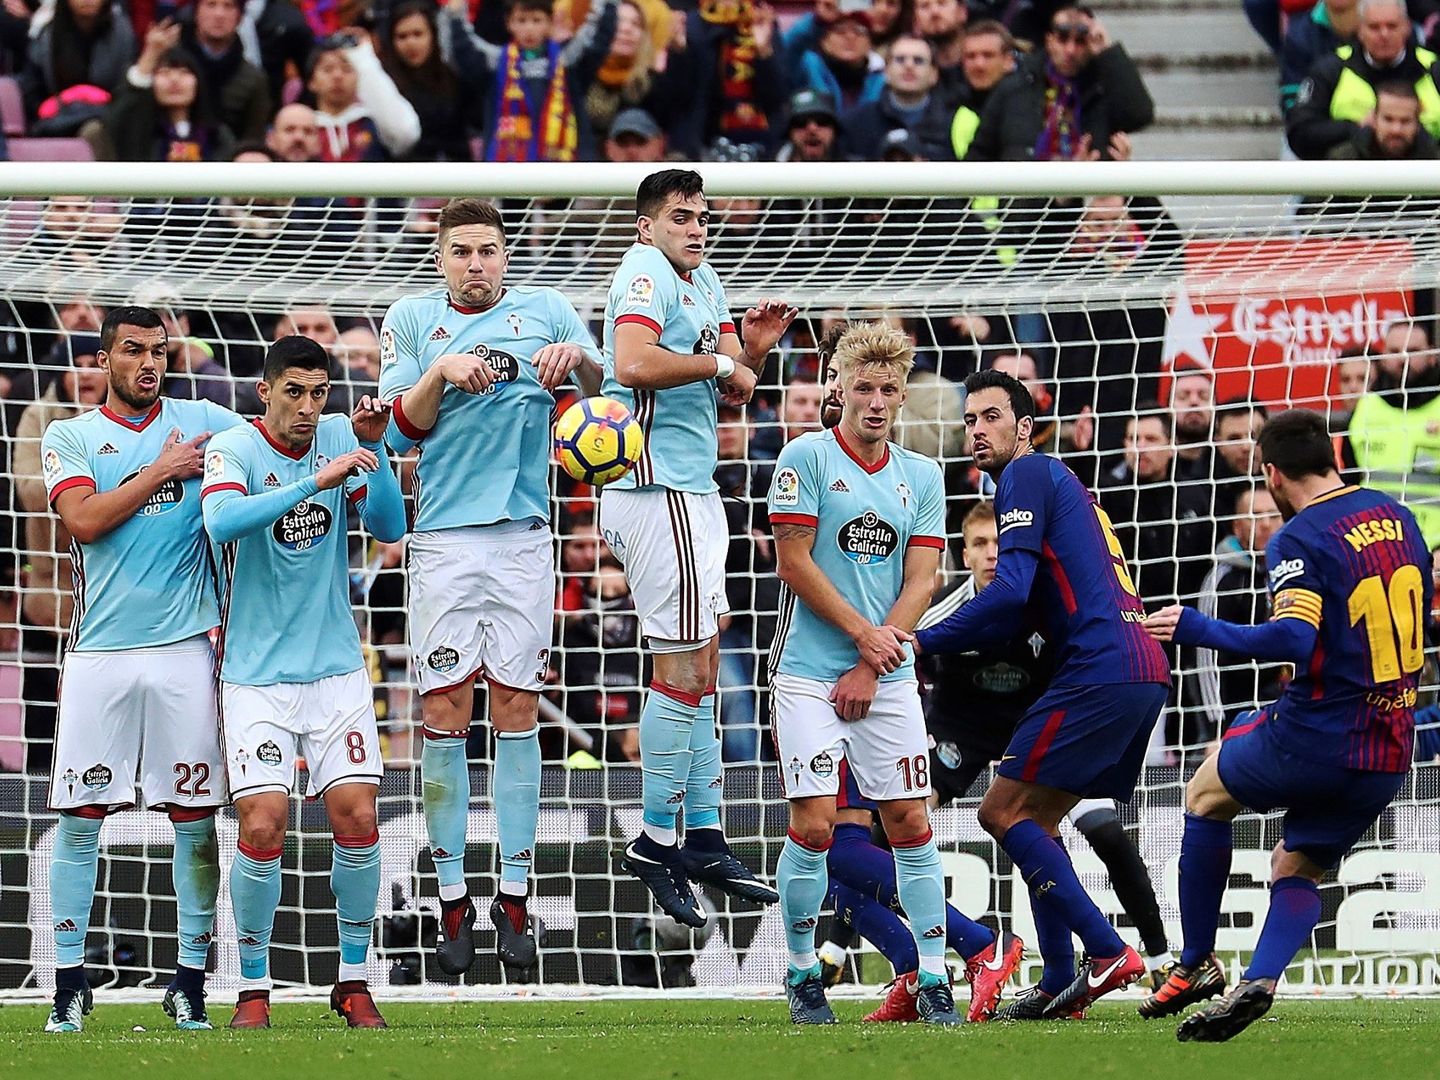 La falta que lanzó Messi en el minuto 95 fue la última acción del partido. (EFE)